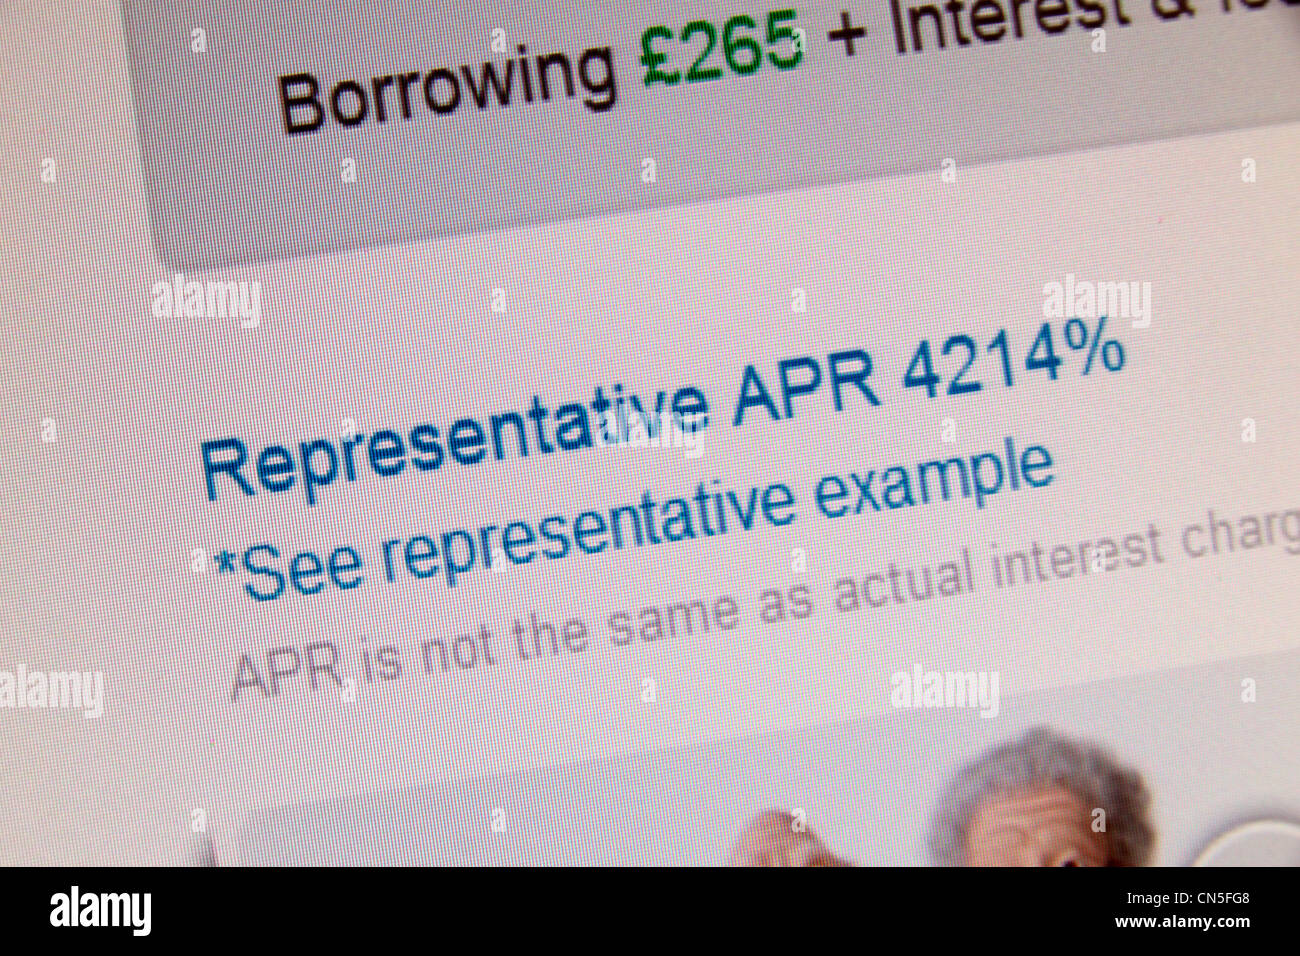 Una captura de pantalla del sitio web Wonga.com mostrando una tasa de interés APR representativa de 4214%. Foto de stock